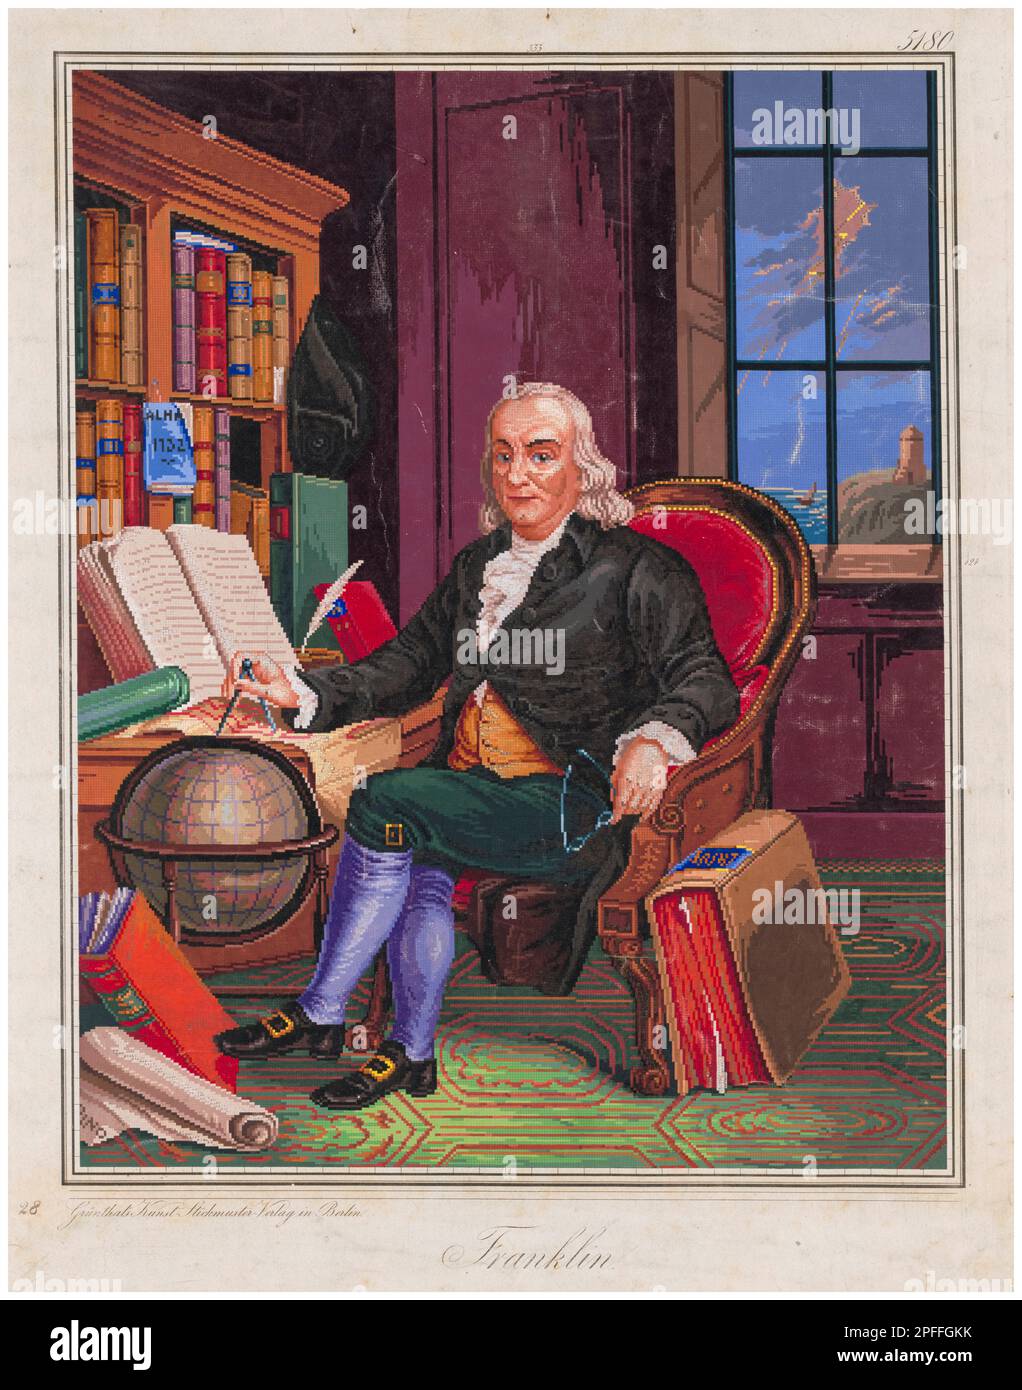 Feuille à motif de broderie montrant Benjamin Franklin (1706-1790), scientifique américain, inventeur, et un des Pères fondateurs des États-Unis, gravure de portrait allemande de couleur main, 1842-1852 Banque D'Images